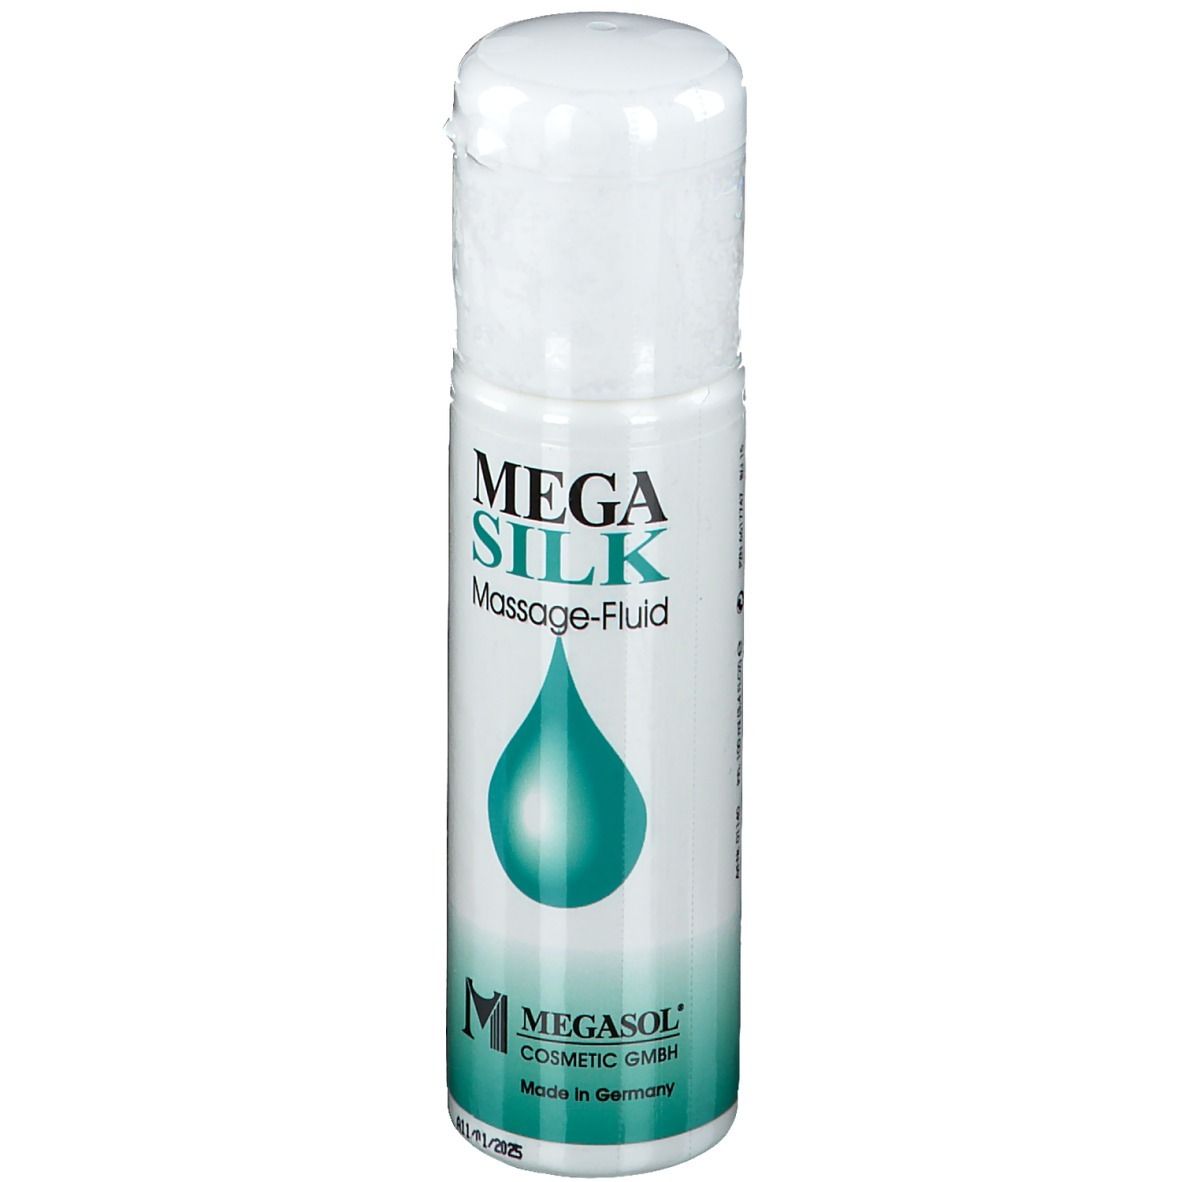 MEGA SILK Massage-Fluid